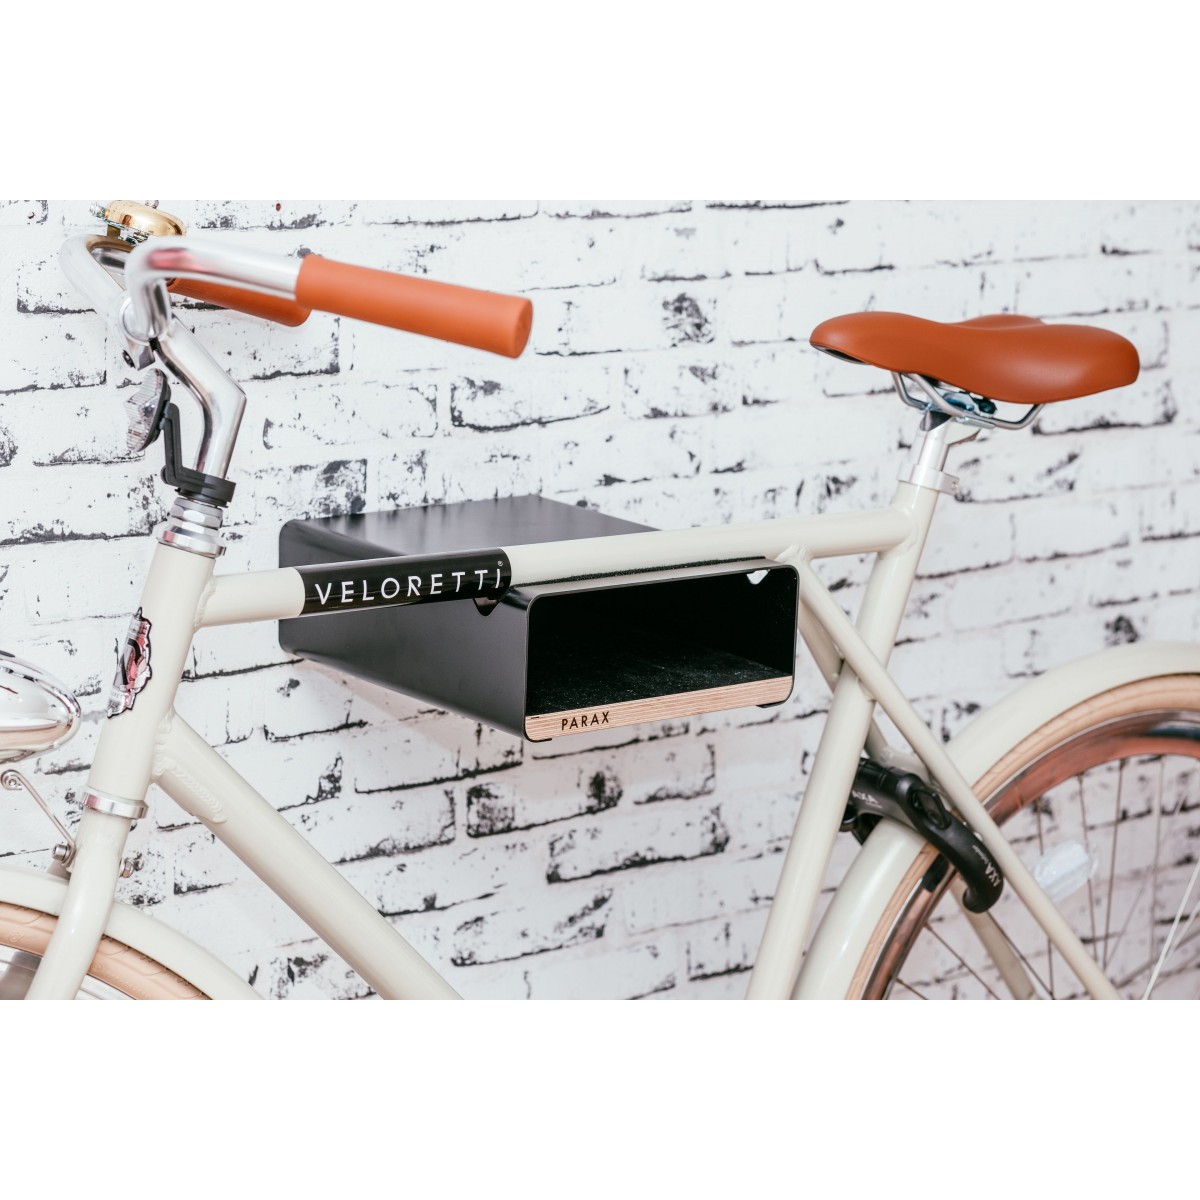 Design Fahrrad-Wandhalterung | PARAX® S-RACK | Schwarz mit Walnuss Holz | für Rennrad Hardtail & Cityrad 